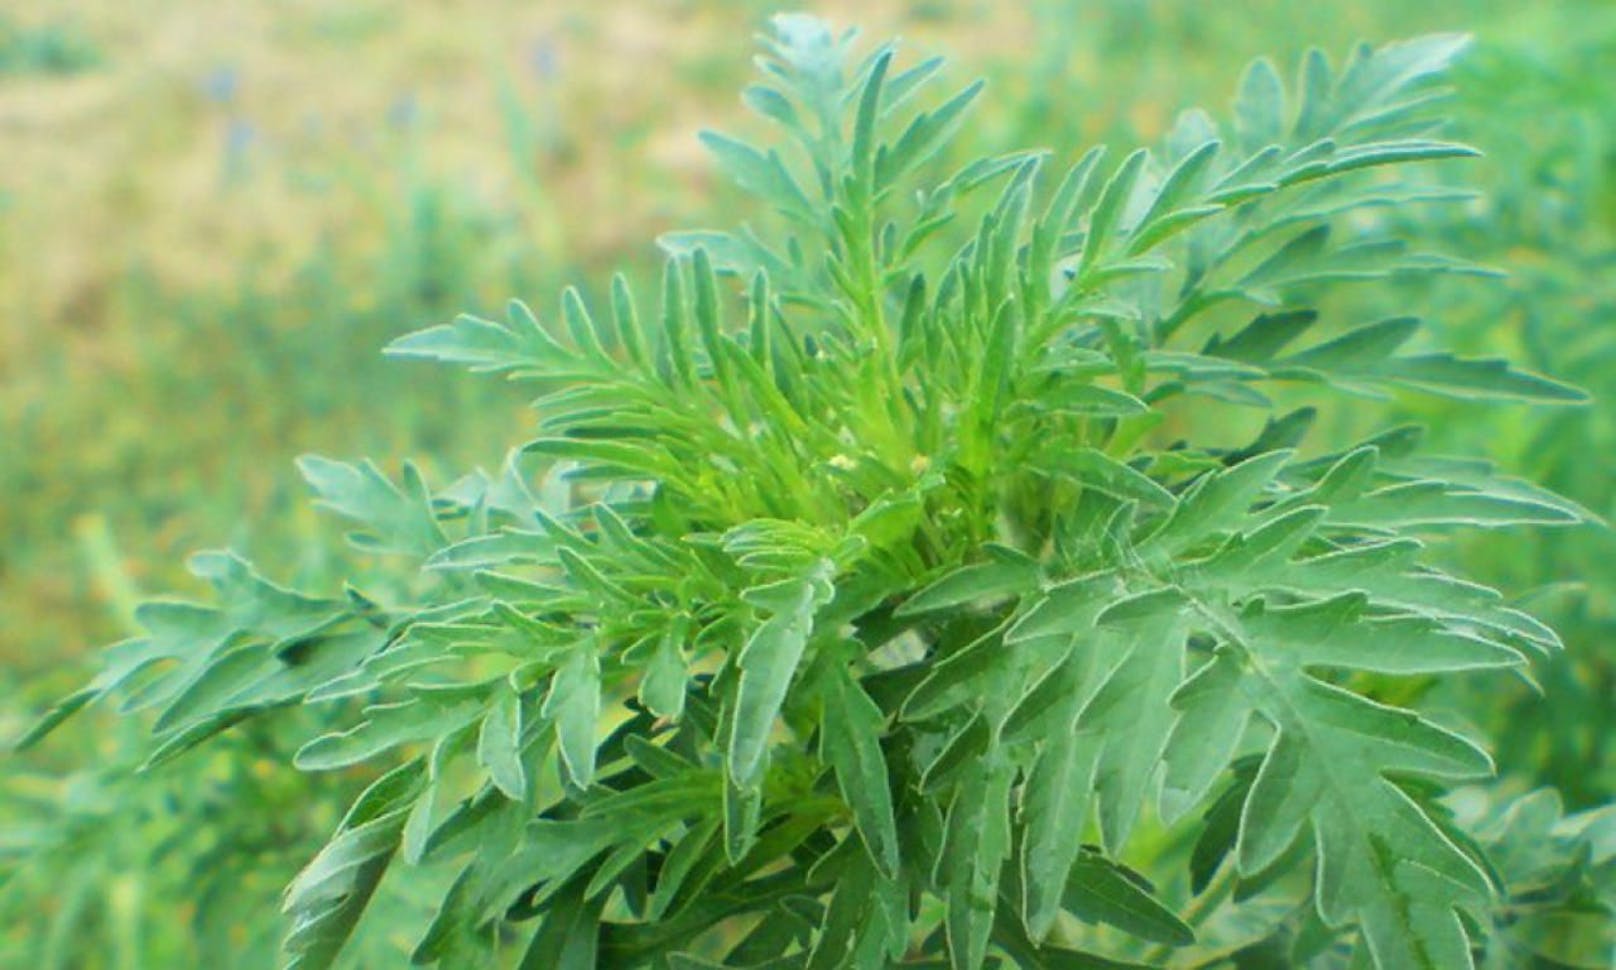 Das Beifußblättrige Traubenkraut (Ambrosia artemisiifolia) wird auch Ambrosia, Beifuß-Ambrosie, Traubenkraut, Aufrechtes Traubenkraut, Wilder Hanf oder mit seiner englischen Bezeichnung Ragweed genannt.